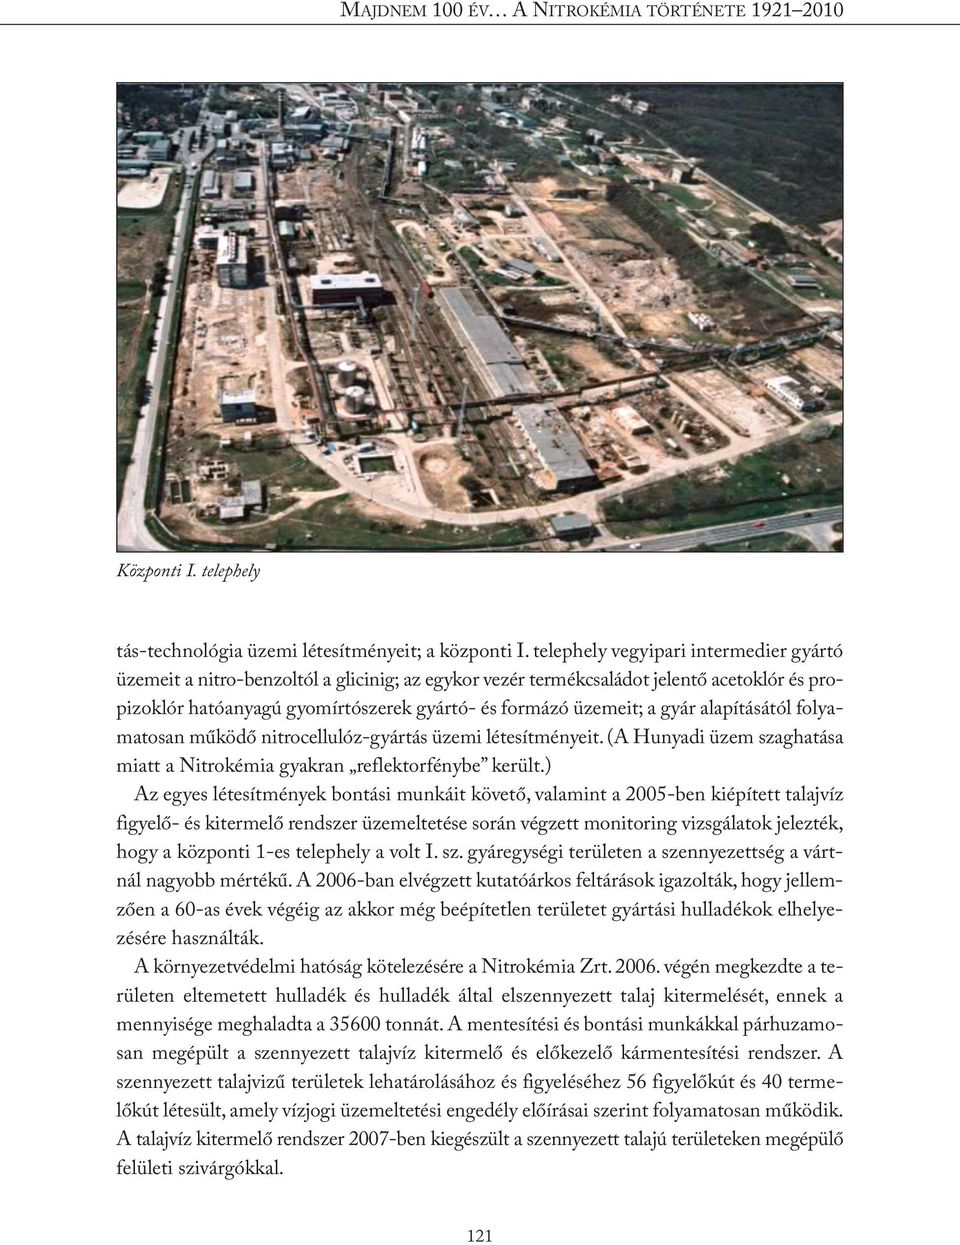 gyár alapításától folyamatosan működő nitrocellulóz-gyártás üzemi létesítményeit. (A Hunyadi üzem szaghatása miatt a Nitrokémia gyakran reflektorfénybe került.